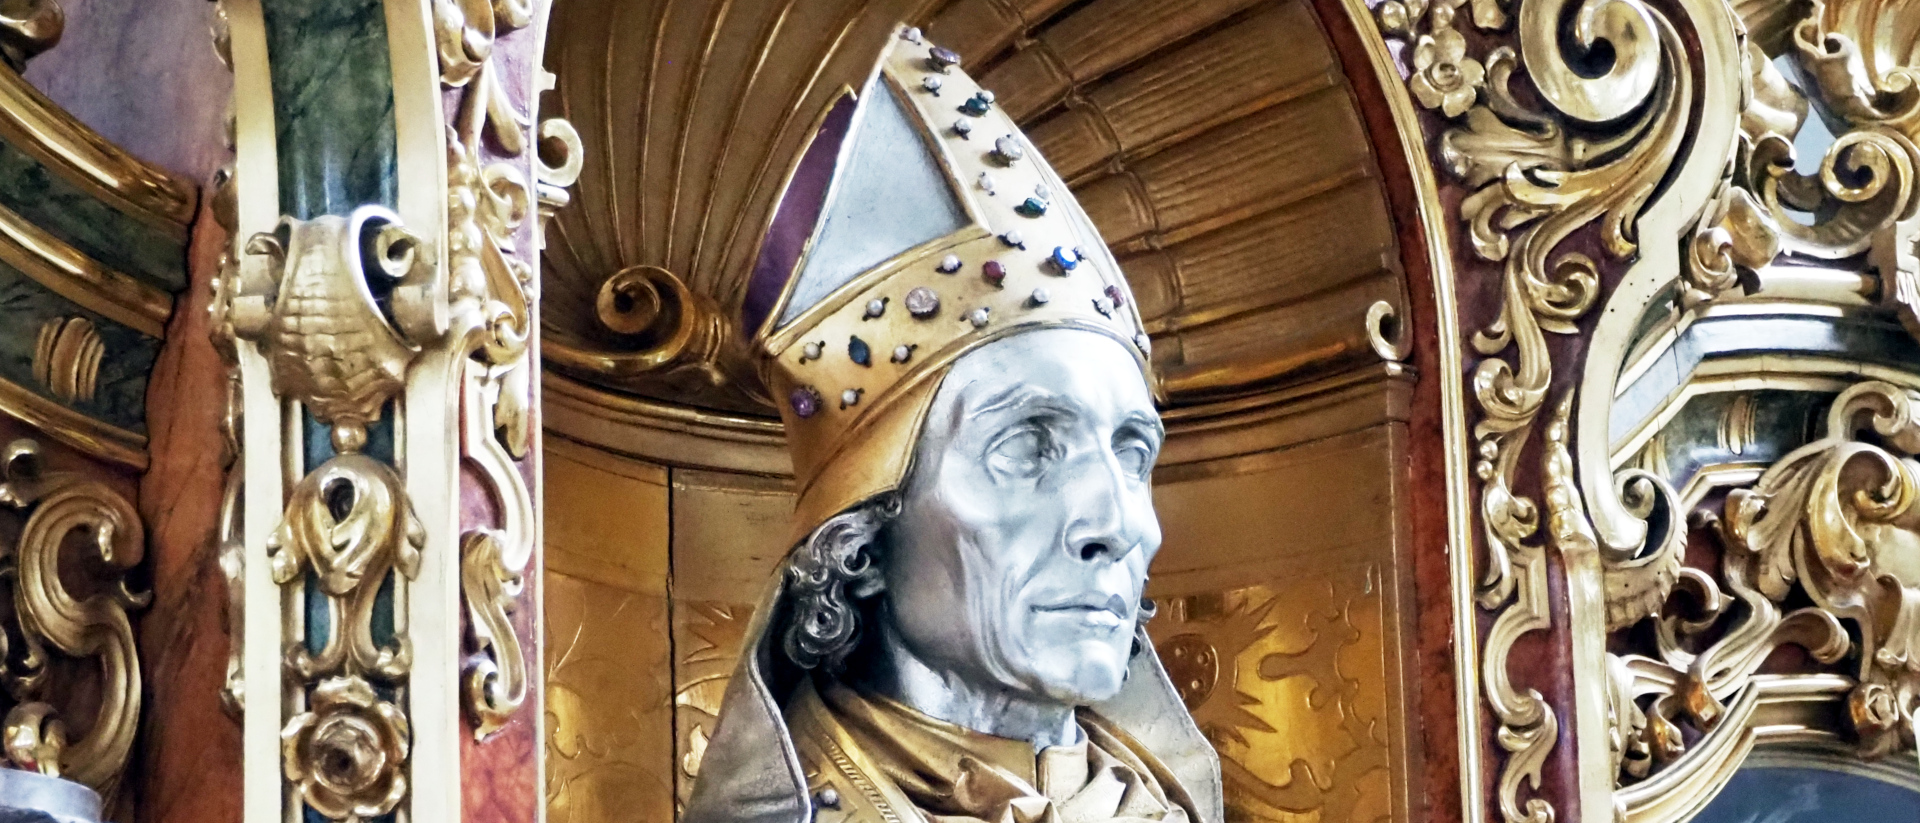 Die Reliquienbüste des St. Pantalus, des legendären ersten Bischofs von Basel, ist in Silber und Gold gehalten